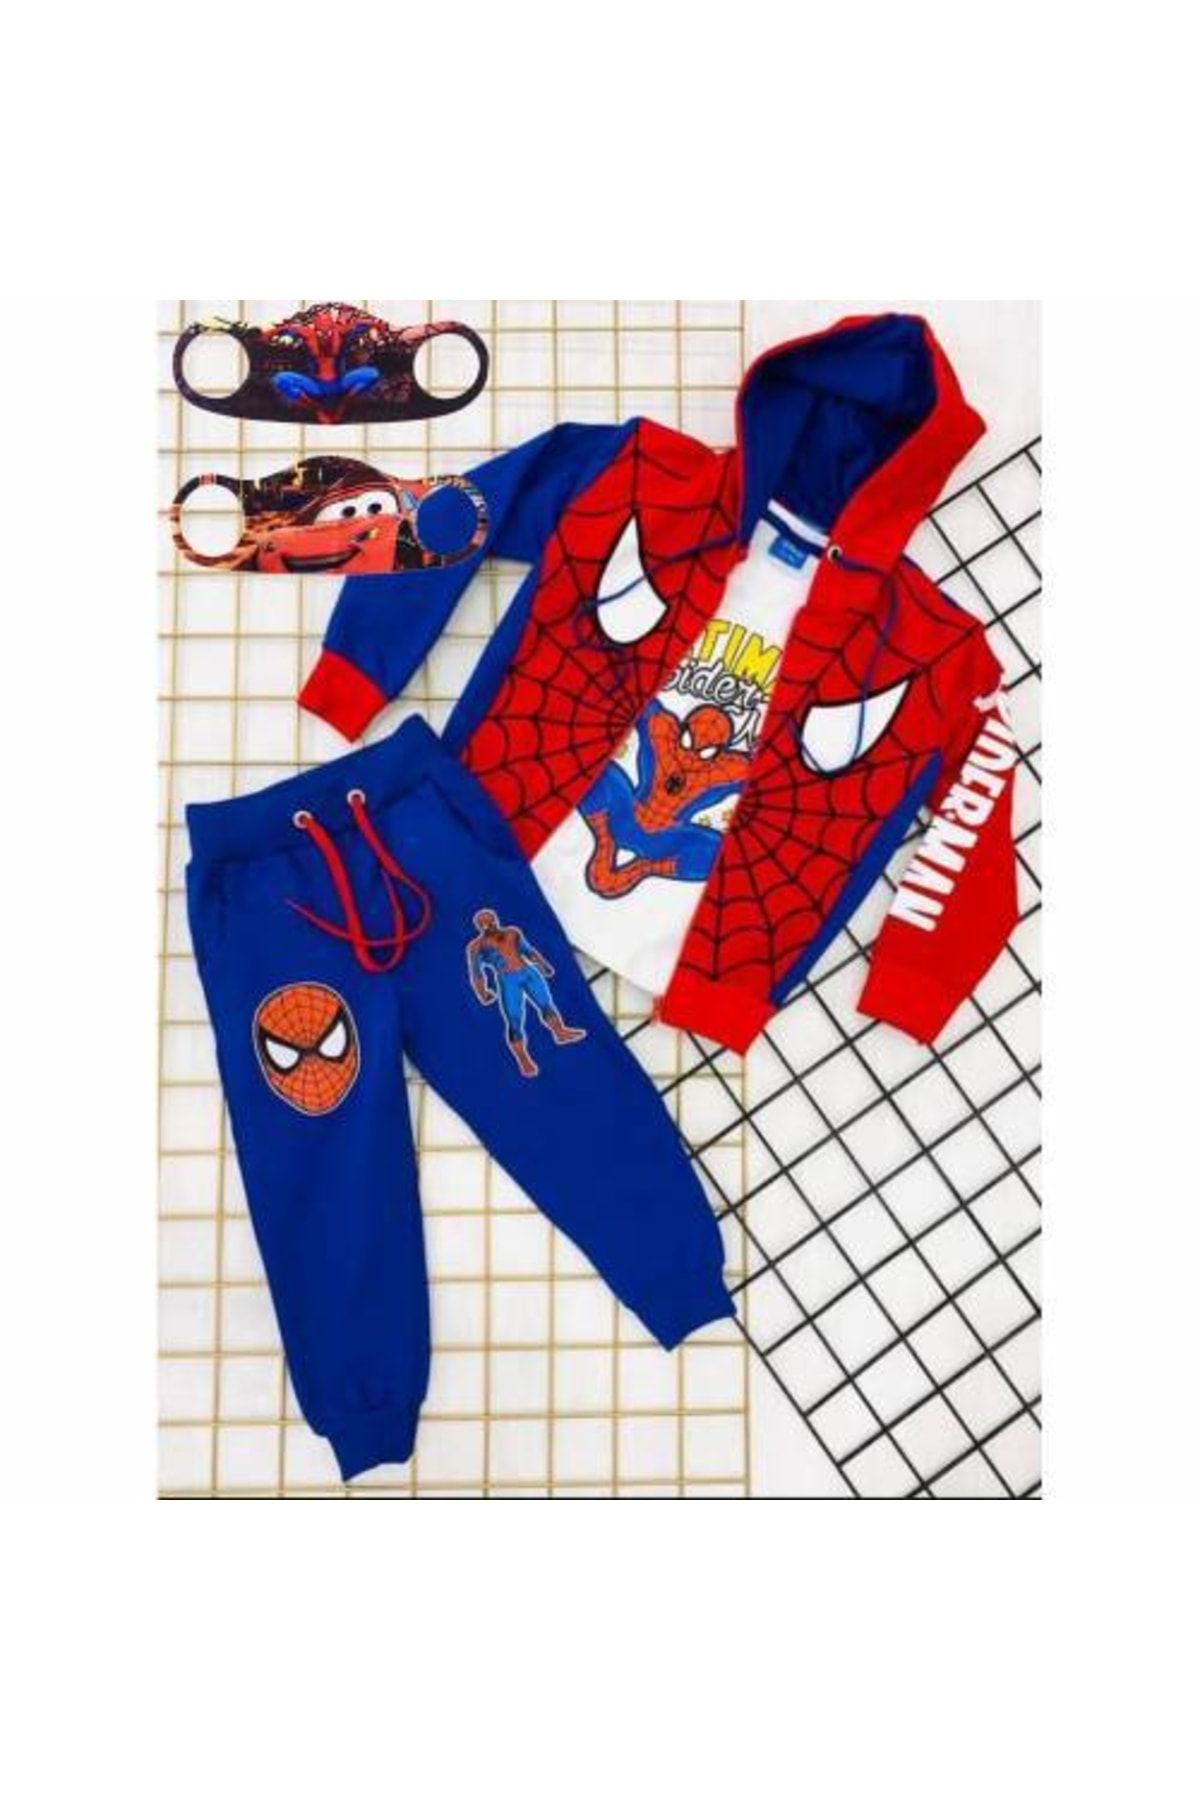 Mashotrend Kapüşonlu 3 Lü Spiderman Örümcek Adam Eşofman Takımı - Erkek Çocuk Eşofman Takımı + 2 Adet Maske